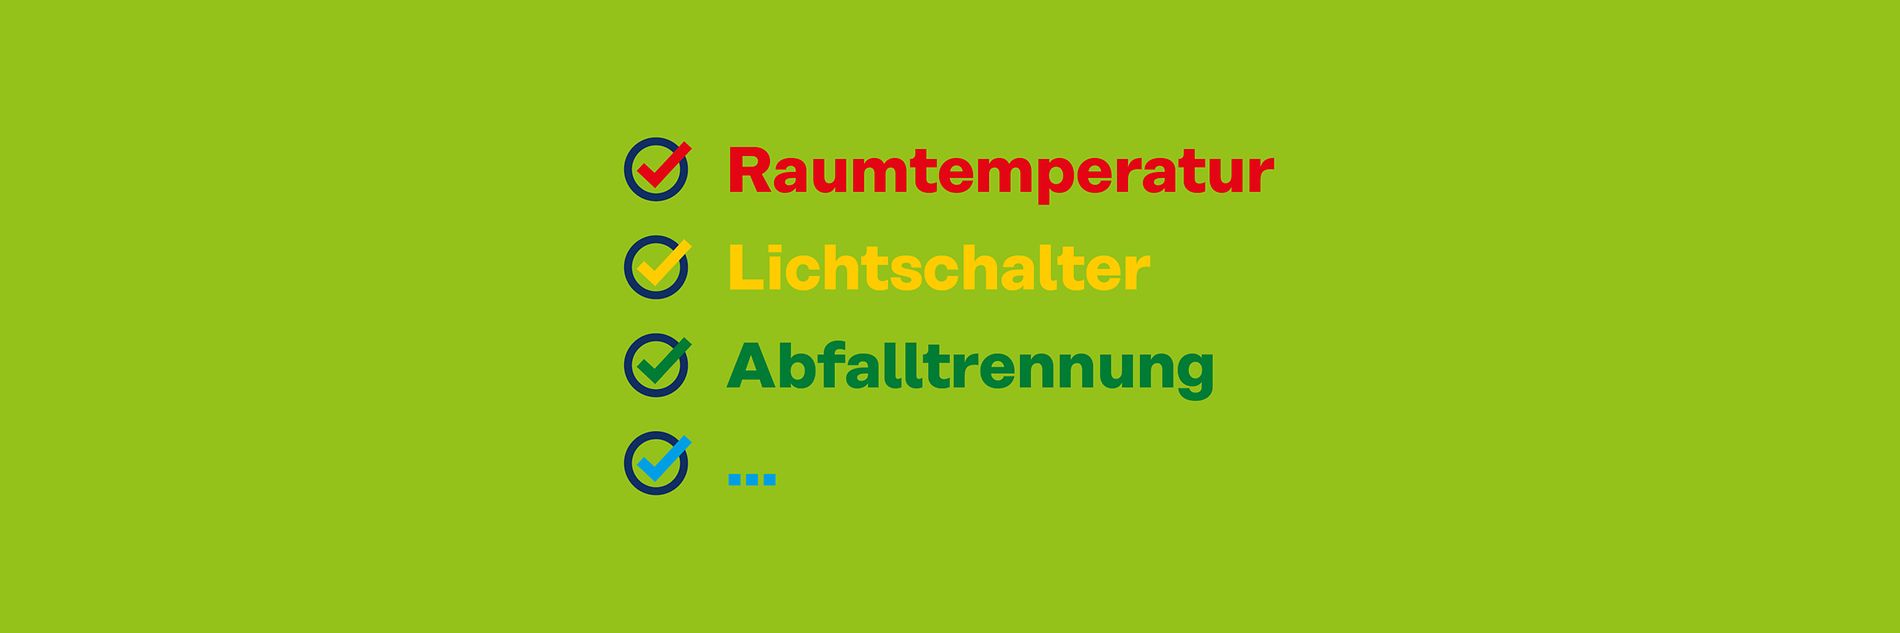 liste-raumtemperatur-lichtschalter-abfalltrennung-4000x1272